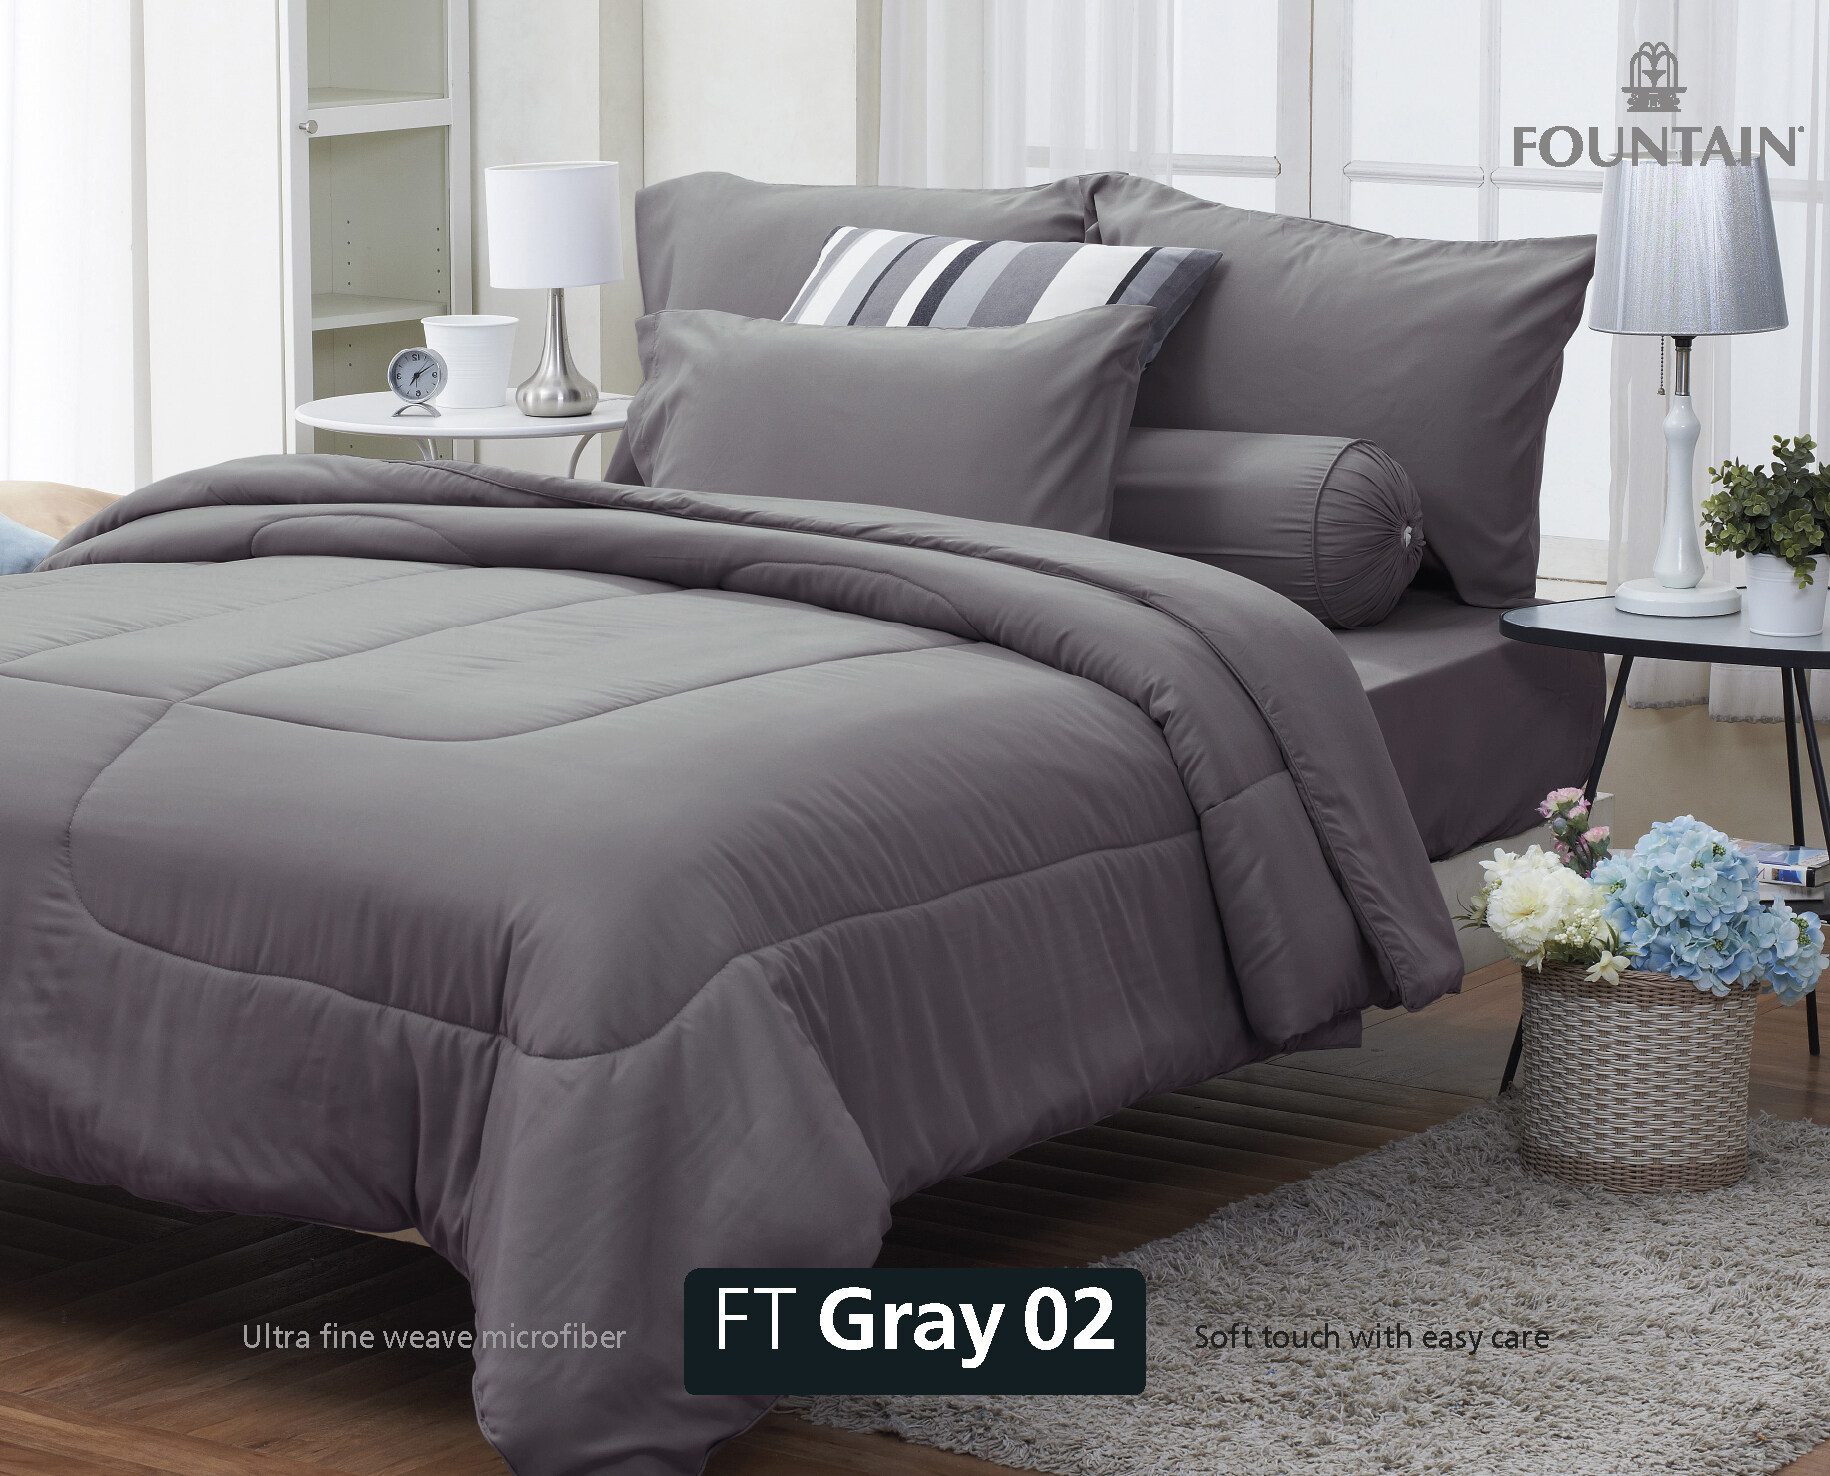 FOUNTAIN ผ้านวม + ชุดผ้าปู ผ้าปู ที่นอน แท้ 100% FTC สีพื้น เขียว Green Gray เทา ขนาด 3.5 5 6ฟุต ชุดเครื่องนอน ผ้านวม ผ้าปูที่นอน wonderful bedding  สี → Gray3ขนาดสินค้า 5 ฟุต